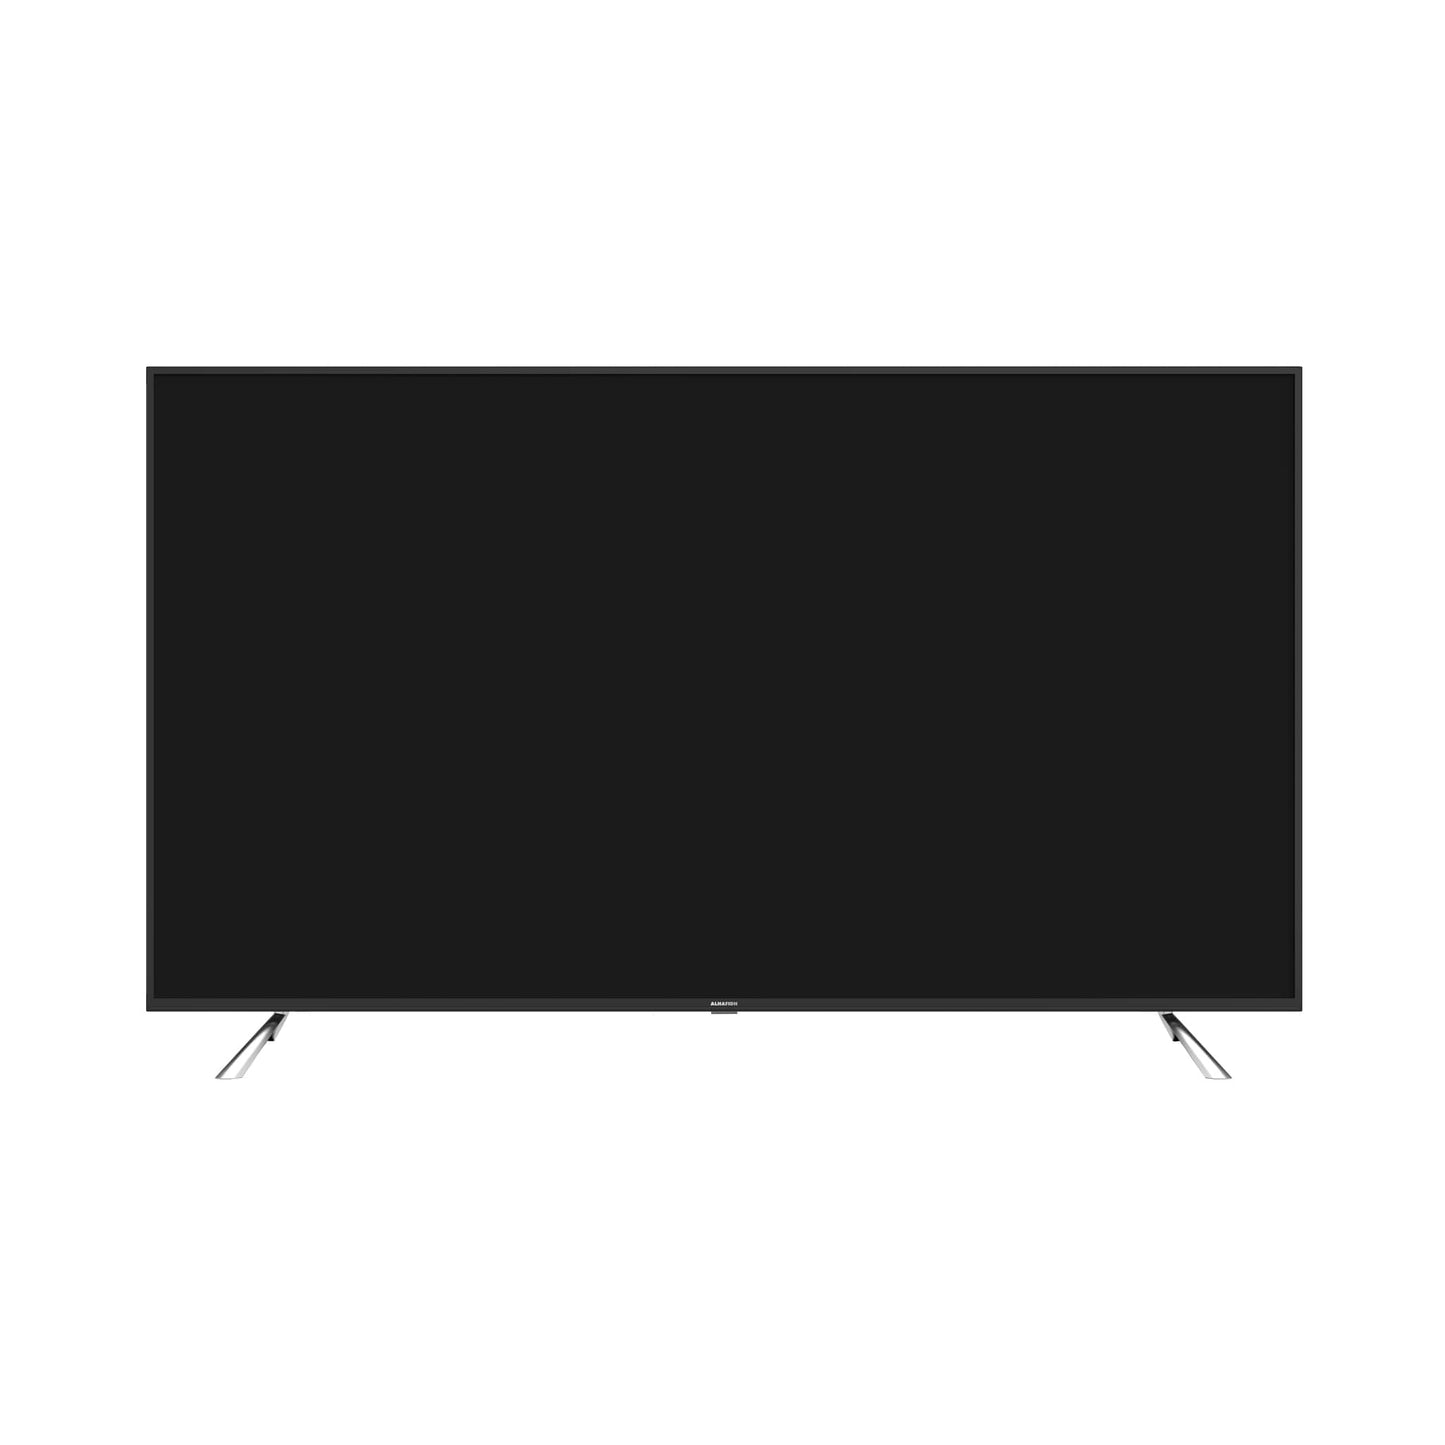 تلفزيون 70 بوصة سمارت LED 4K UHD (إصدار 2021) الحافظ - #موغامبو ستور#